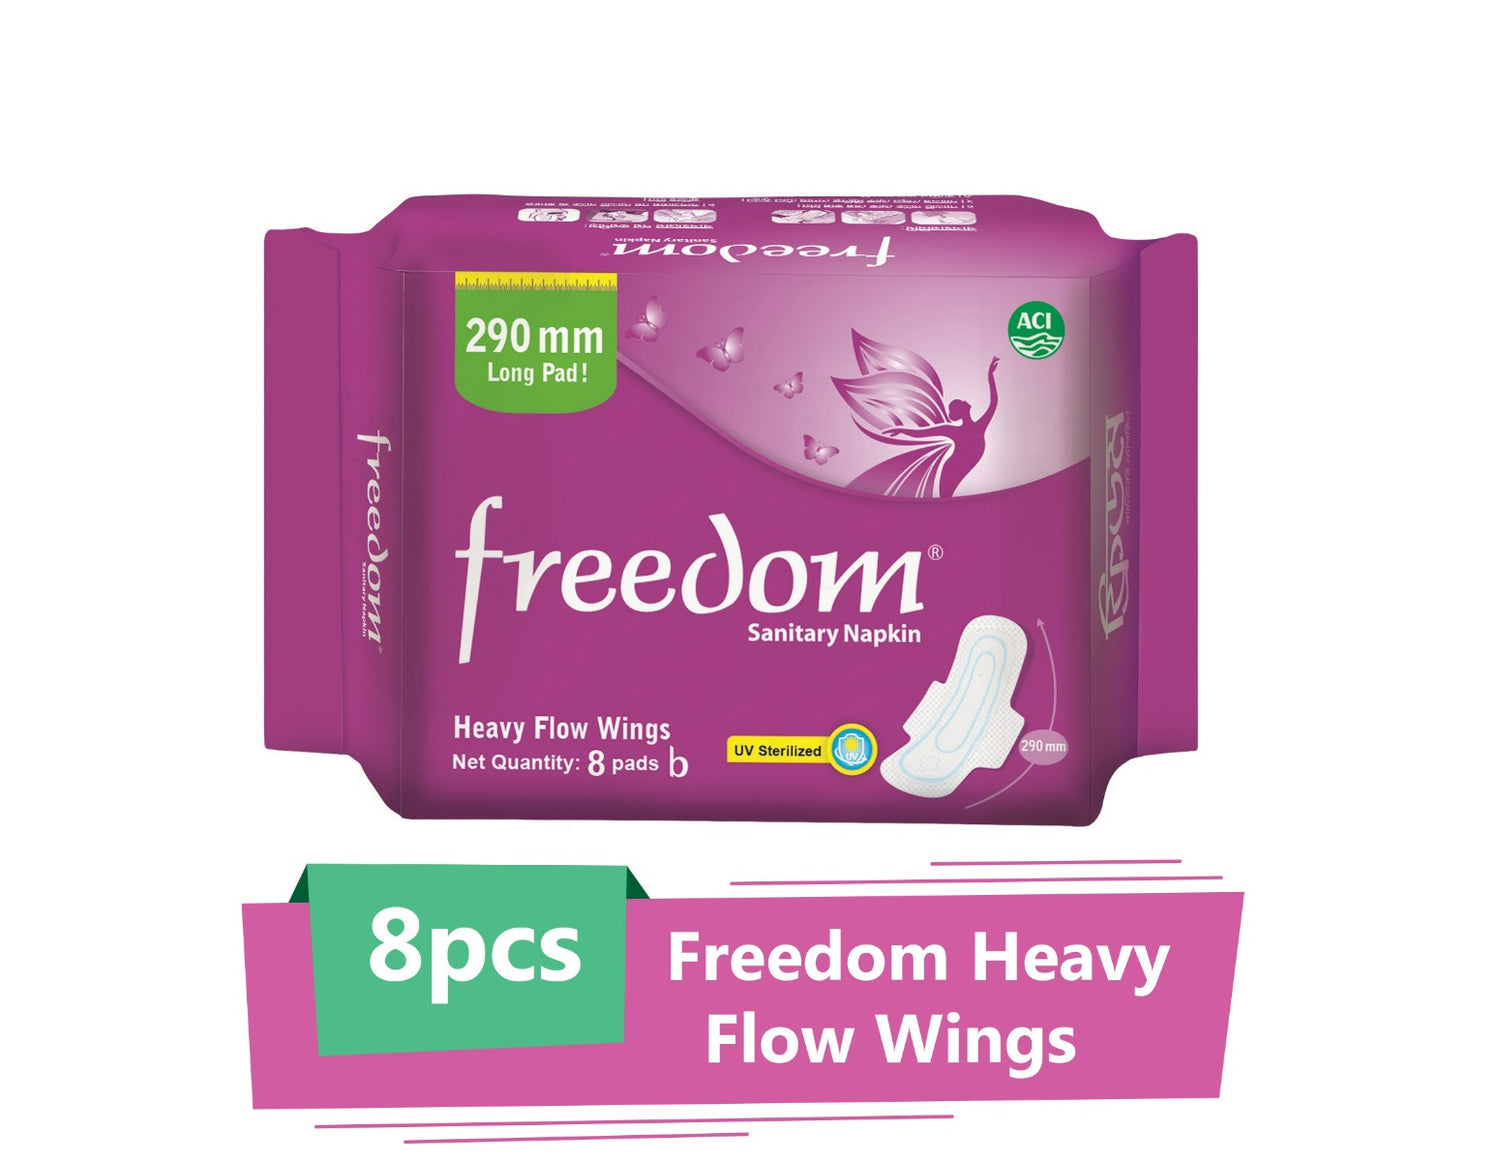 Freedom Heavy Flow Wings